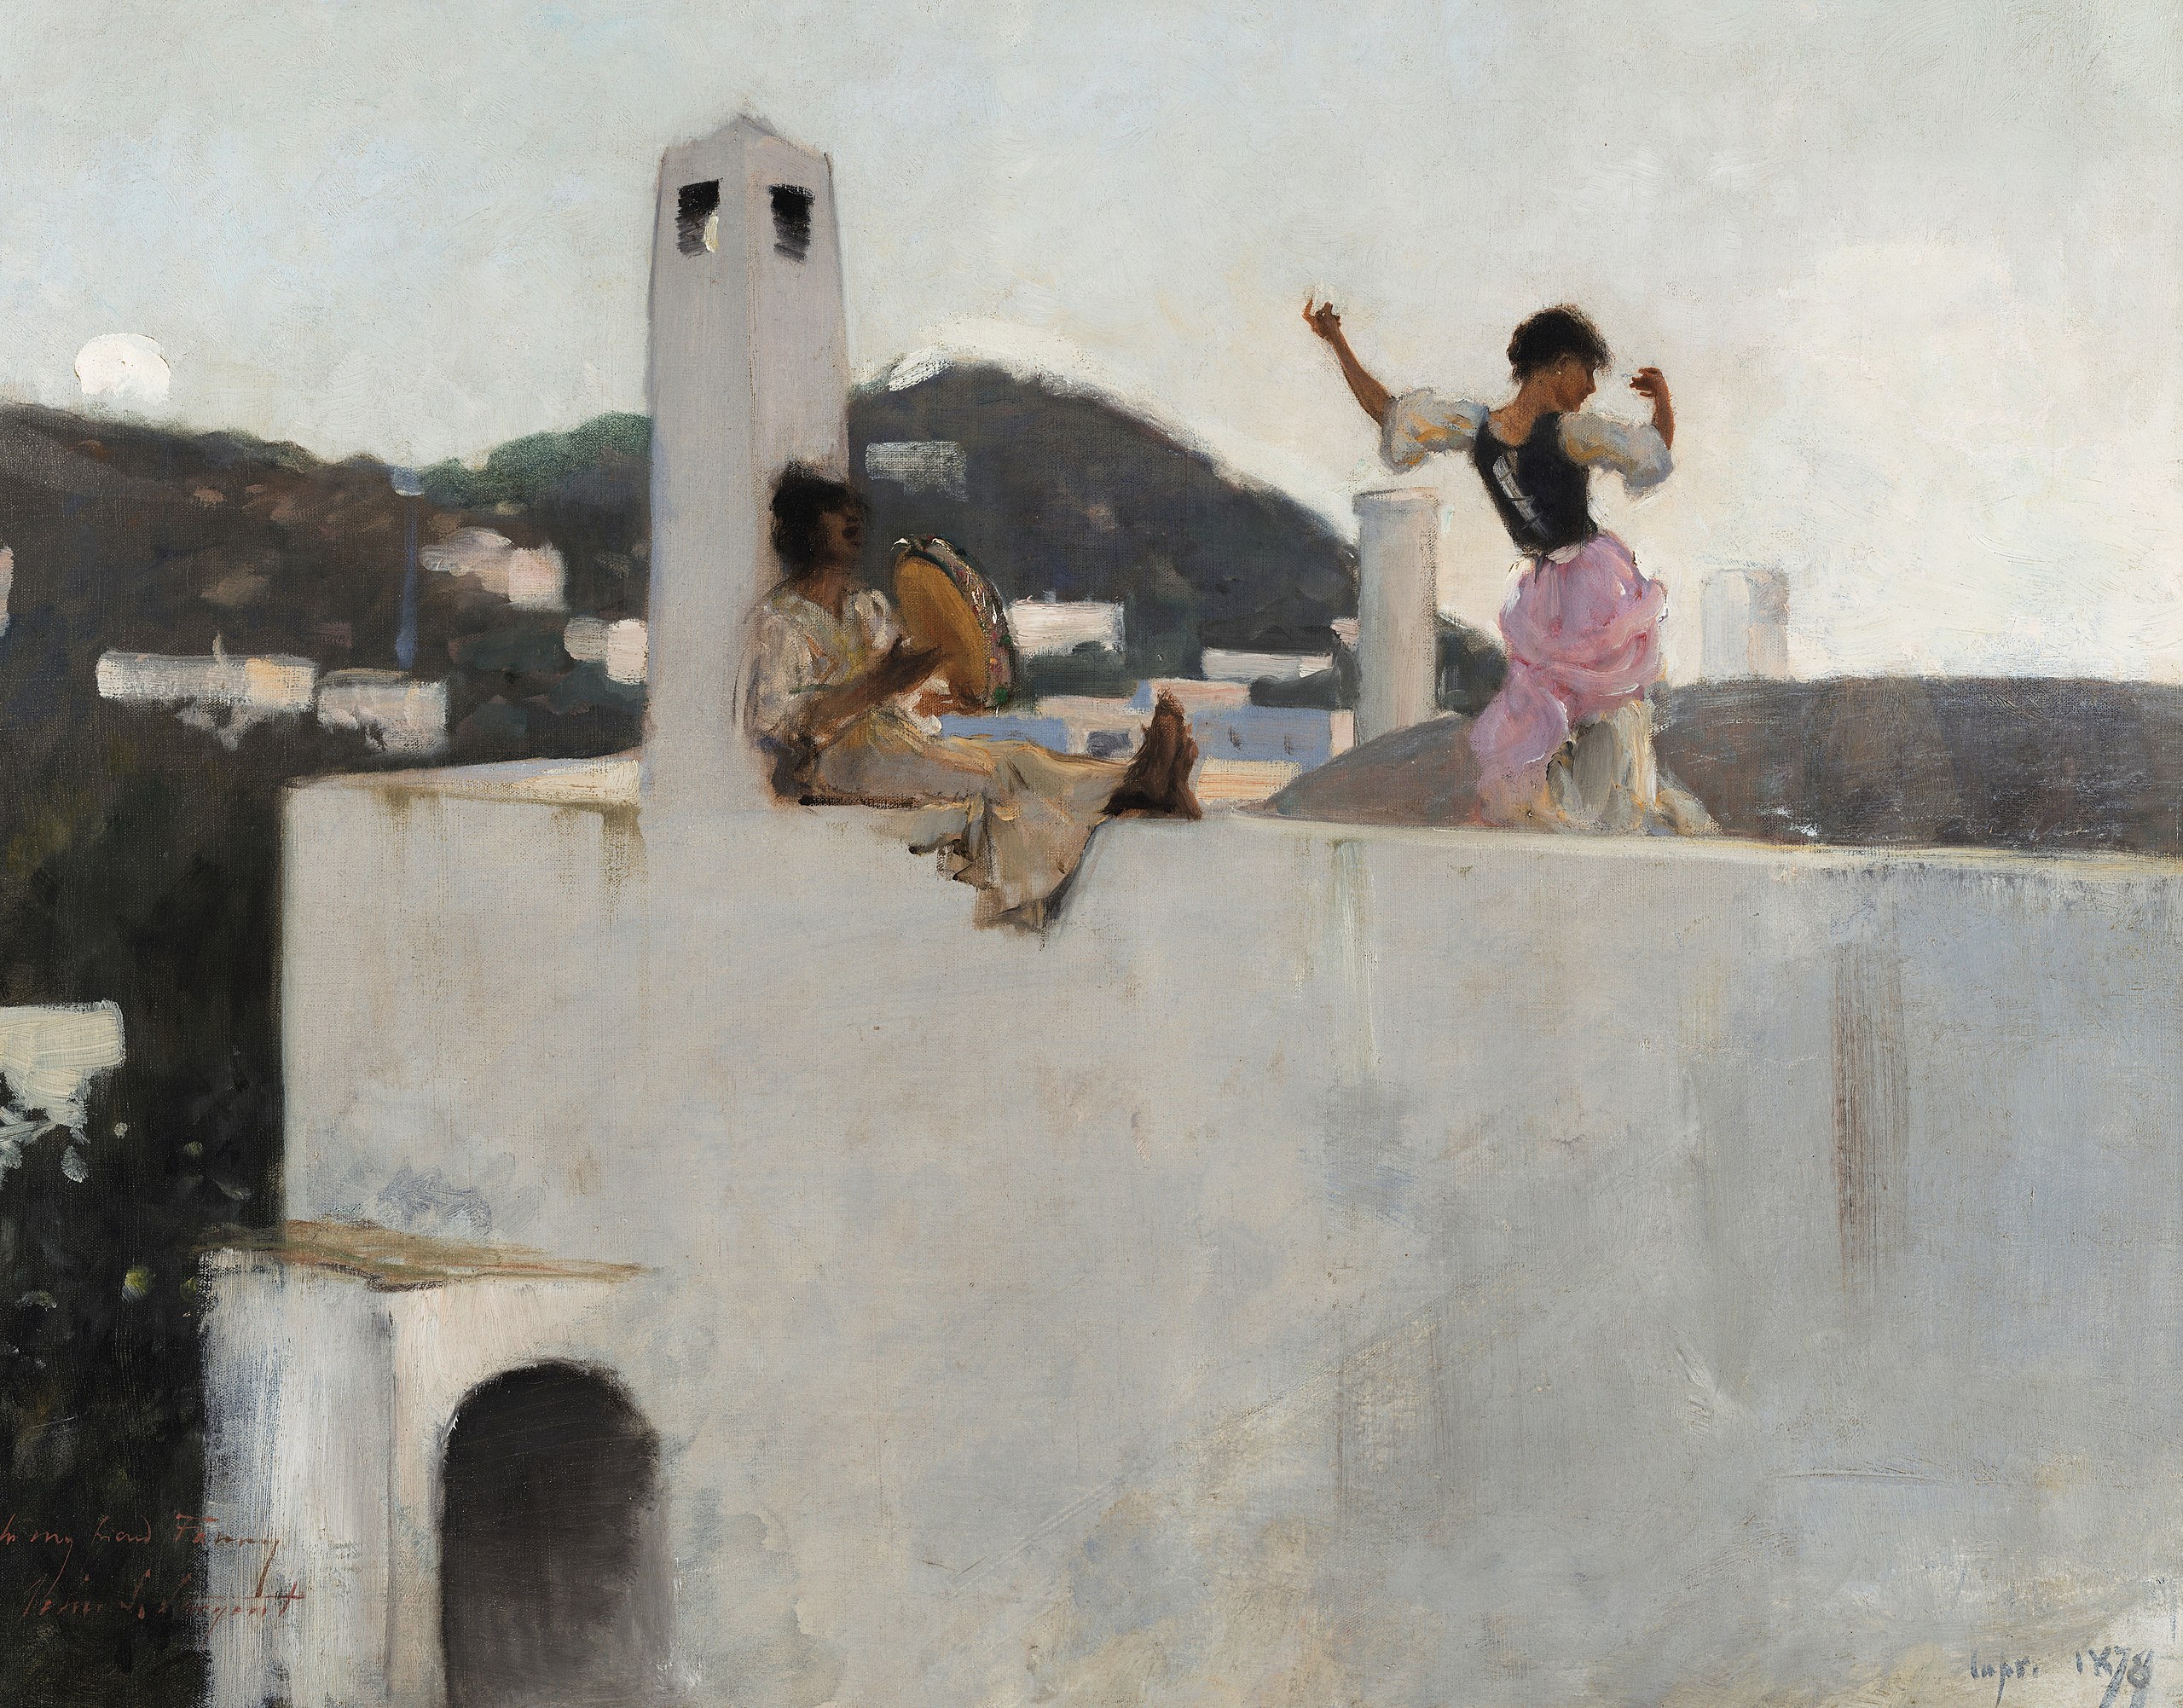 屋頂上的卡普里女孩 by John Singer Sargent - 1878 年 - 50.8 x 63.5 釐米 